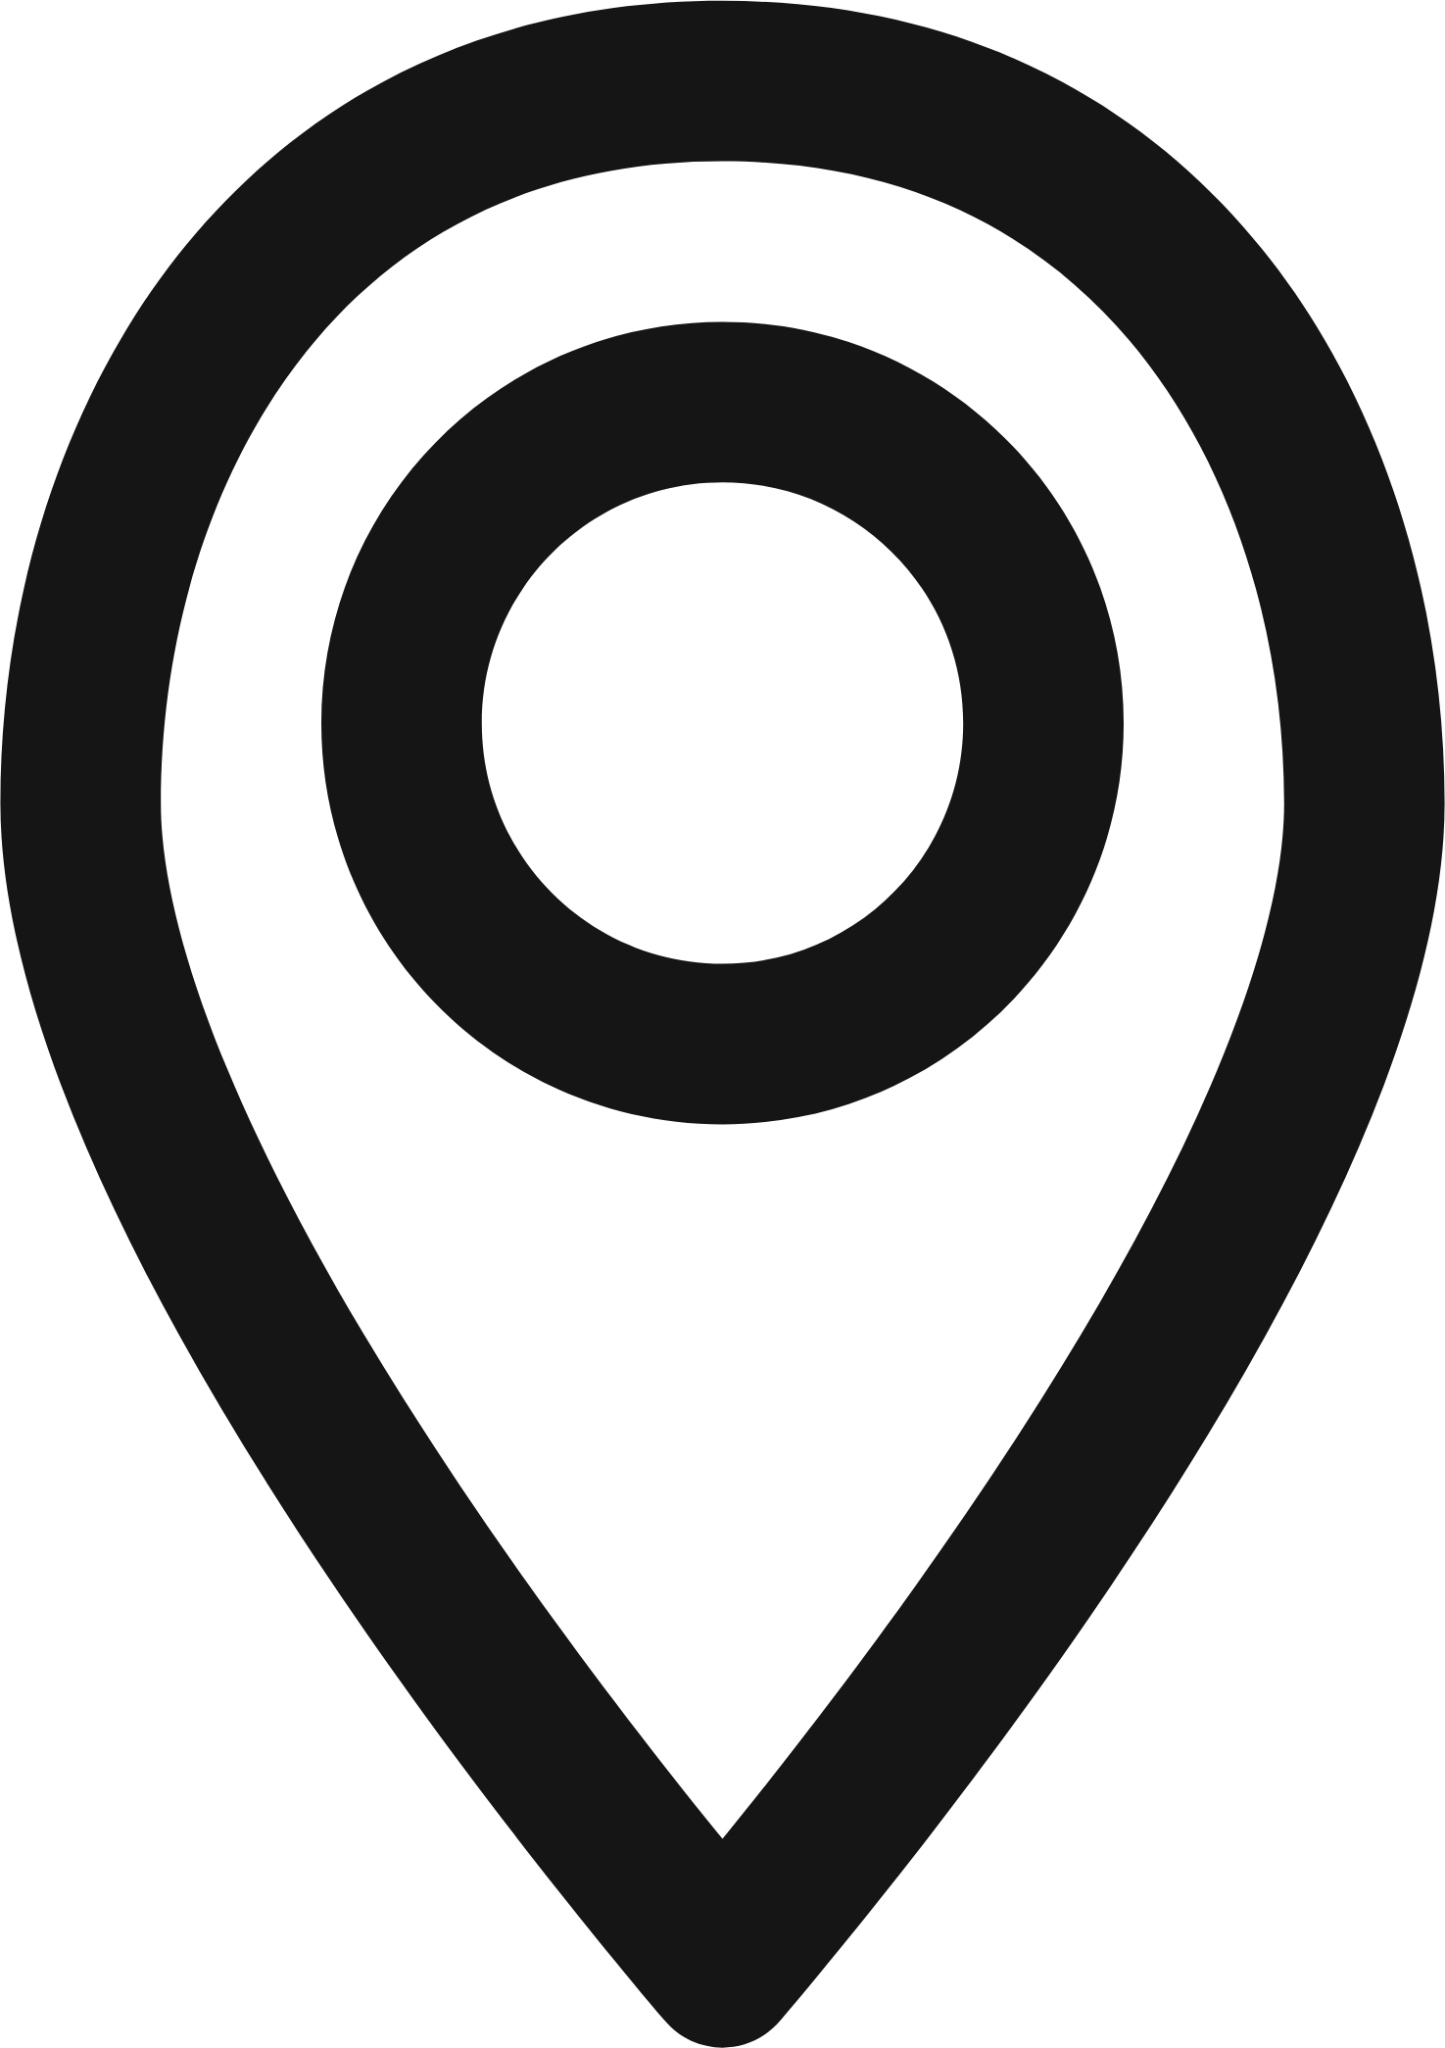 location icon